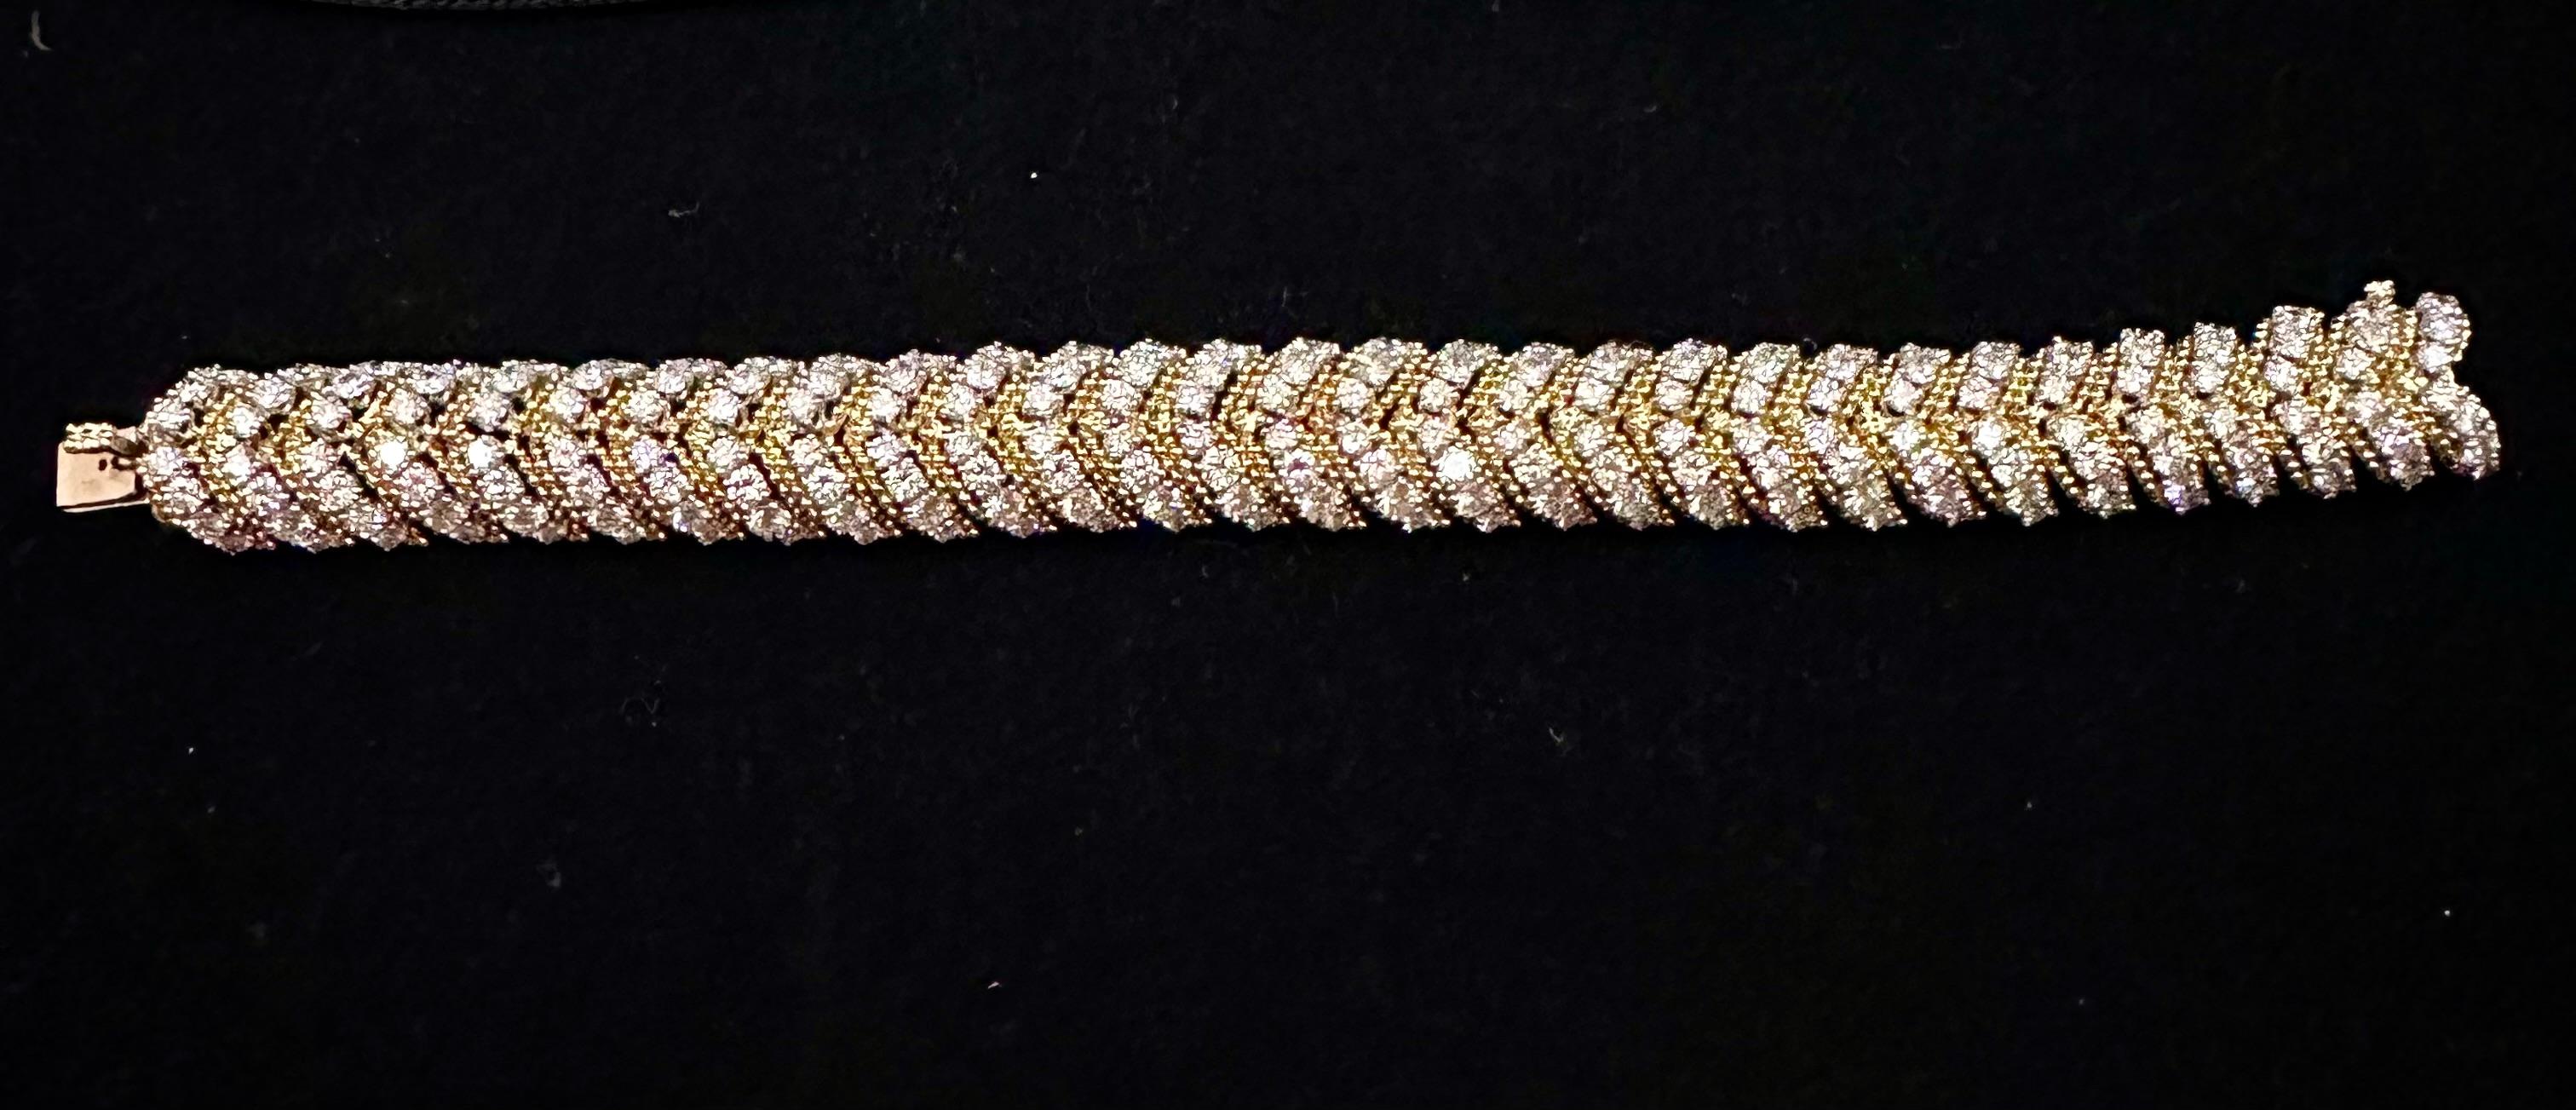 Women's or Men's Van Cleef And Arpels Diamond Bracelet 18k Yellow Gold  For Sale